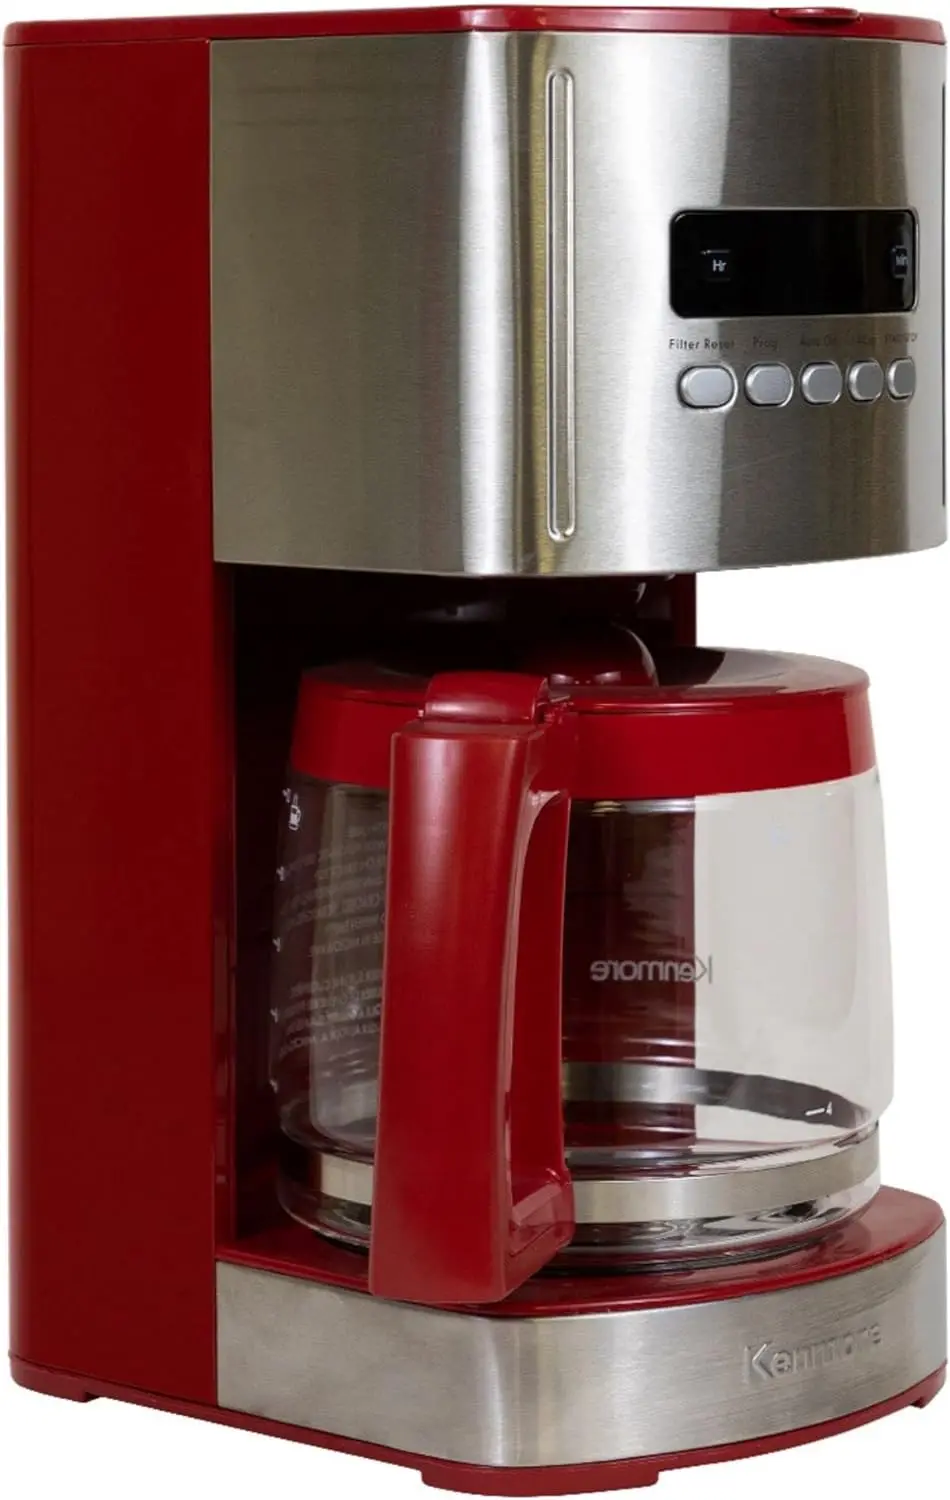 

Программируемая кофеварка с 12 чашками, капельная кофемашина из красной и нержавеющей стали, стеклянный графин, многоразовый фильтр, таймер